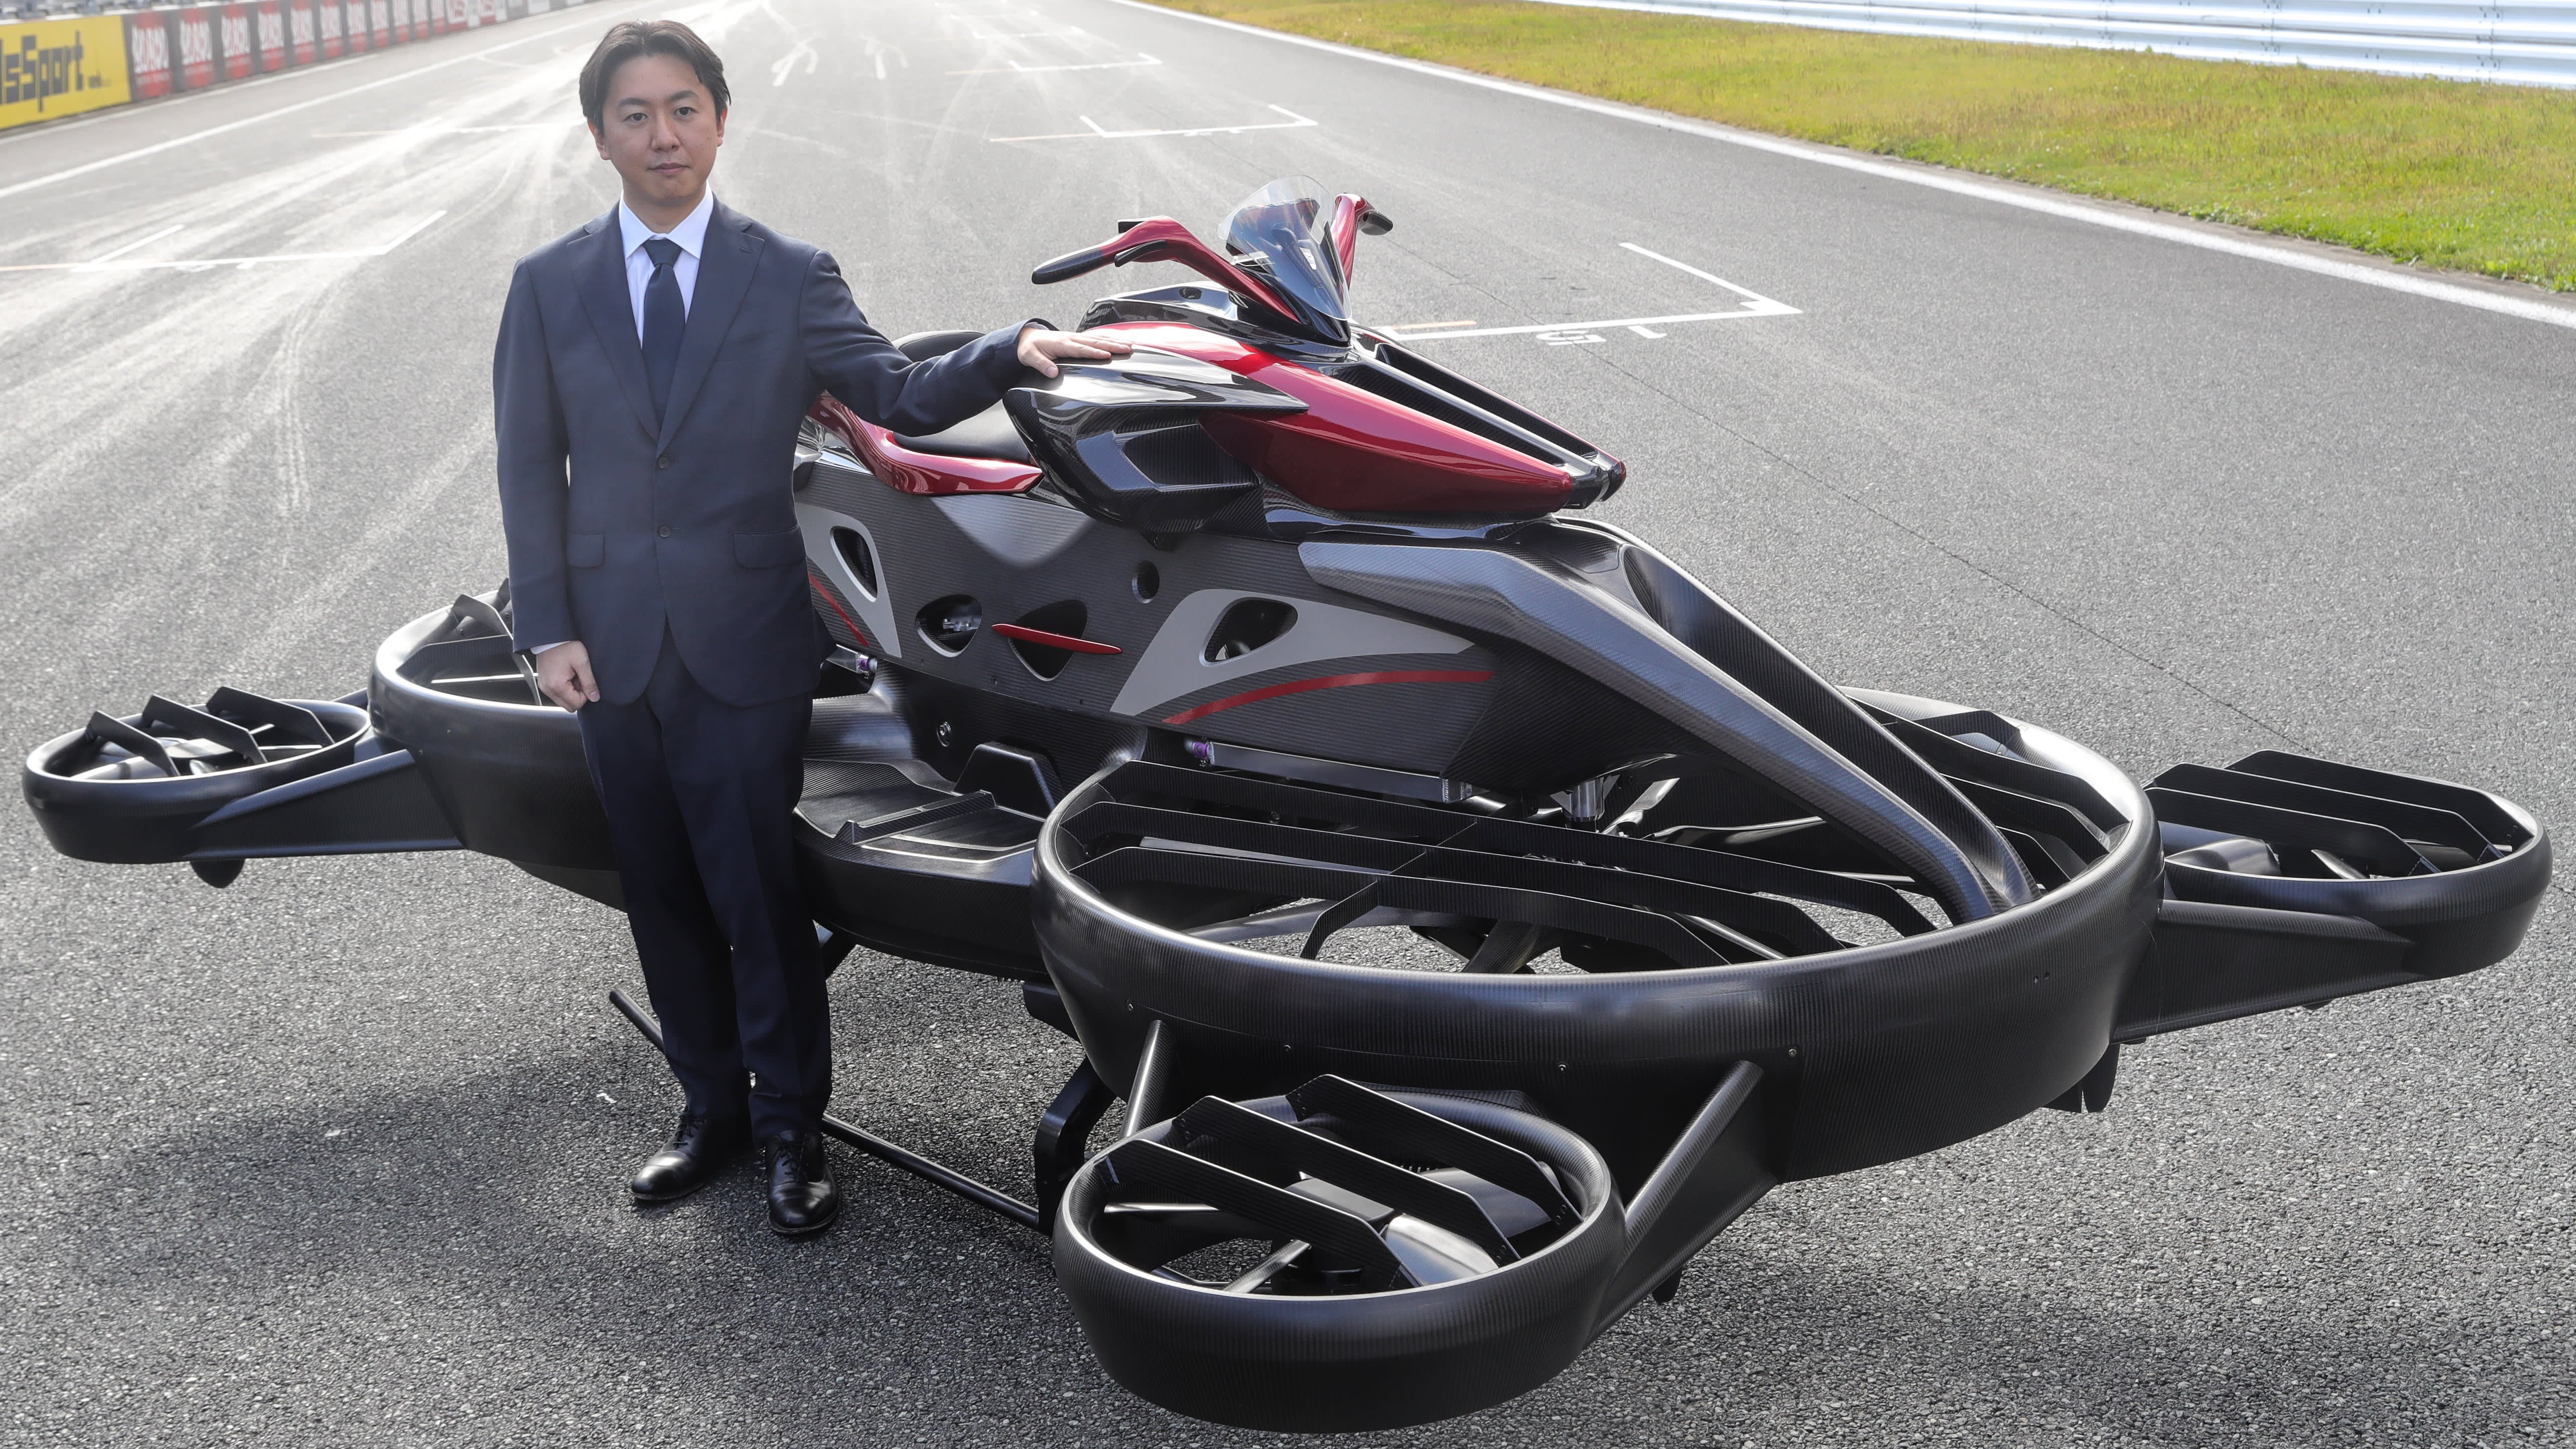 Летающий байки. Летающий мотоцикл Ховербайк. Ховербайк Turismo. Летающий байк в Японии. Летающий мотоцикл XTURISMO Hoverbike Limited Edition.